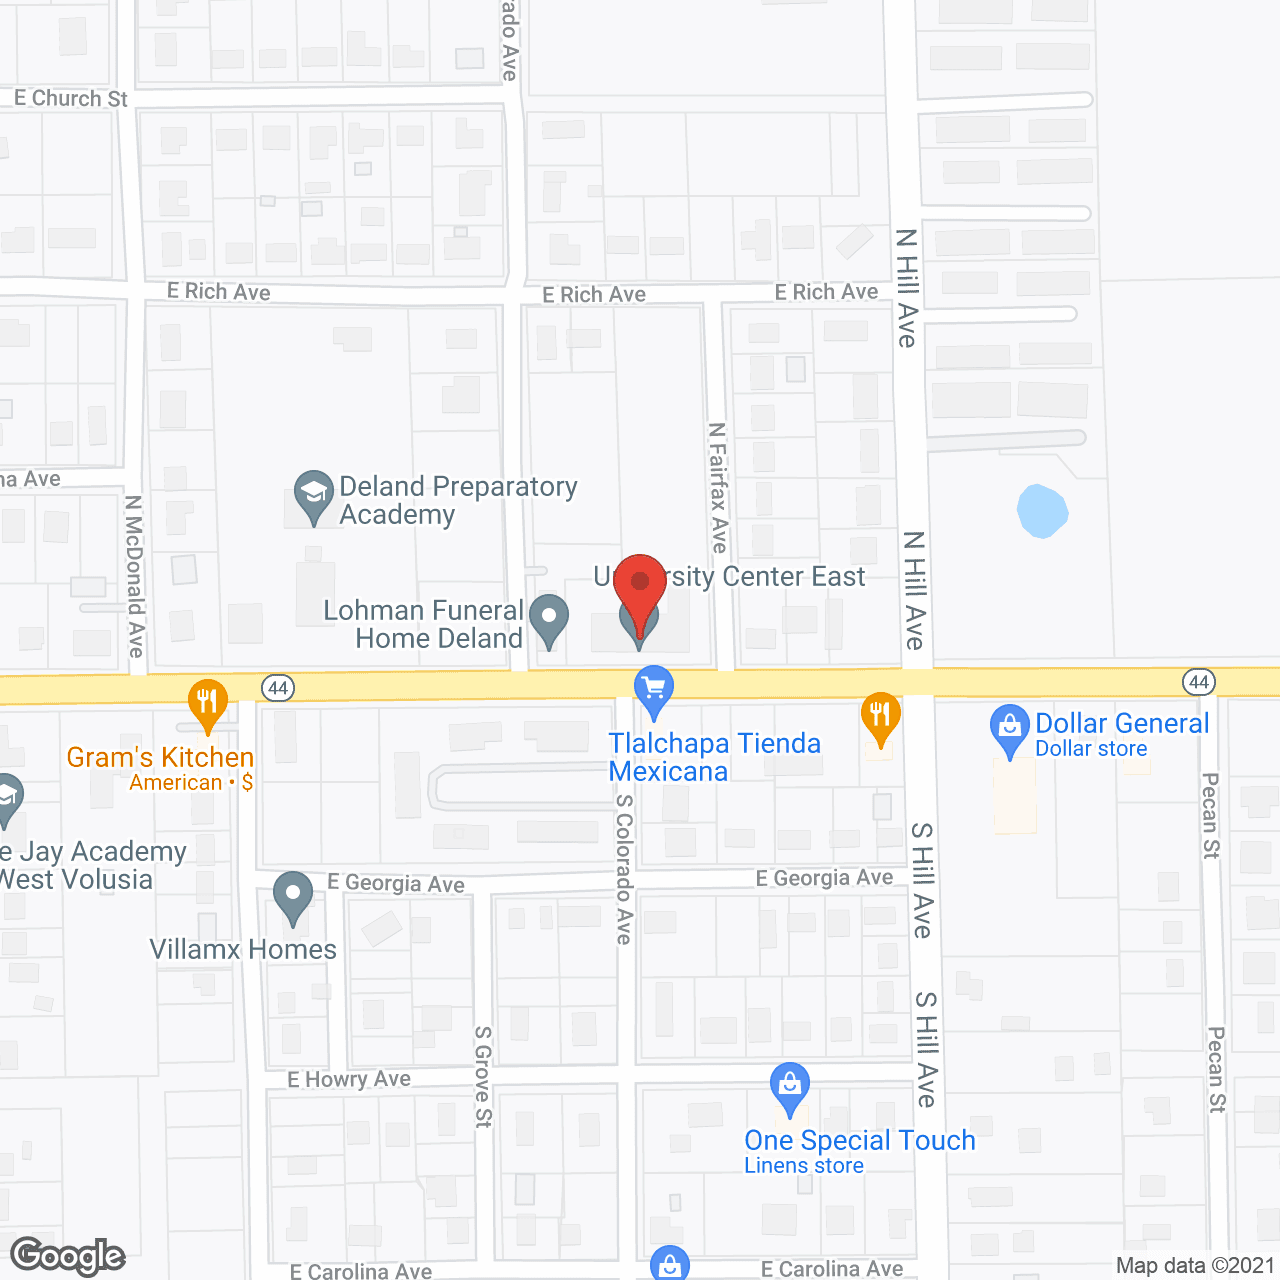 University Center East in google map